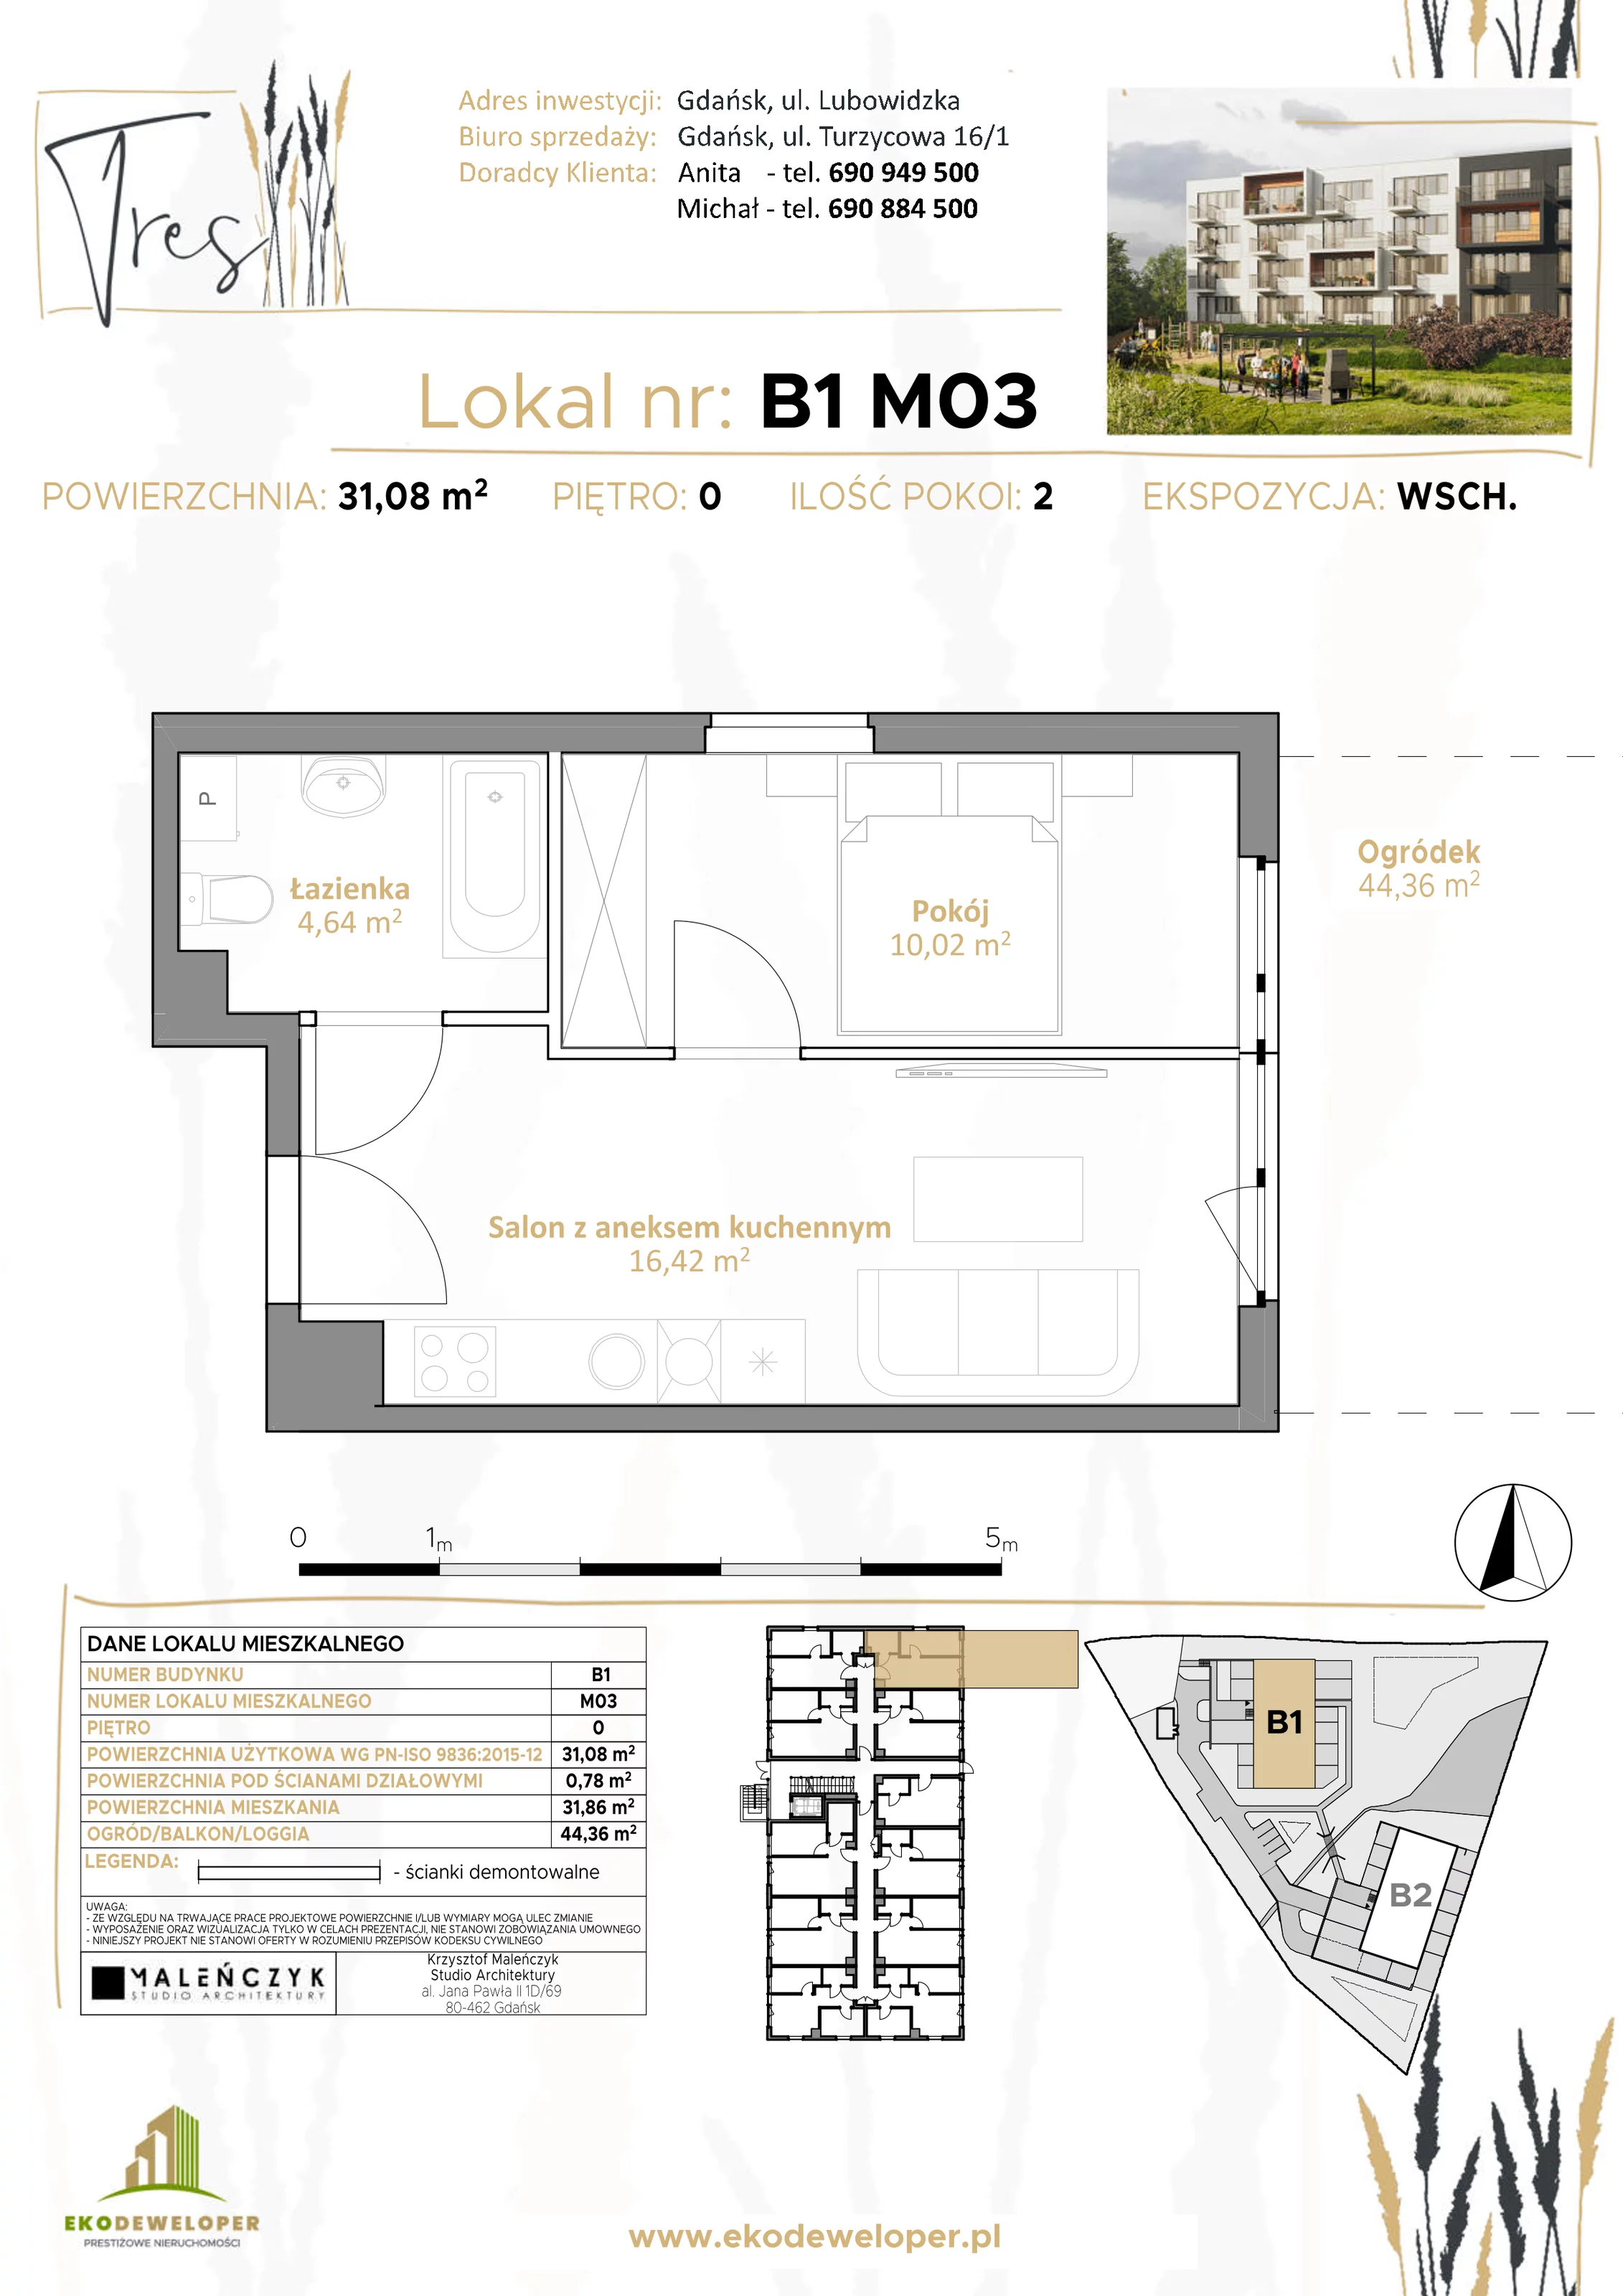 Mieszkanie 31,08 m², parter, oferta nr B1.M03, Tres, Gdańsk, Jasień, ul. Lubowidzka